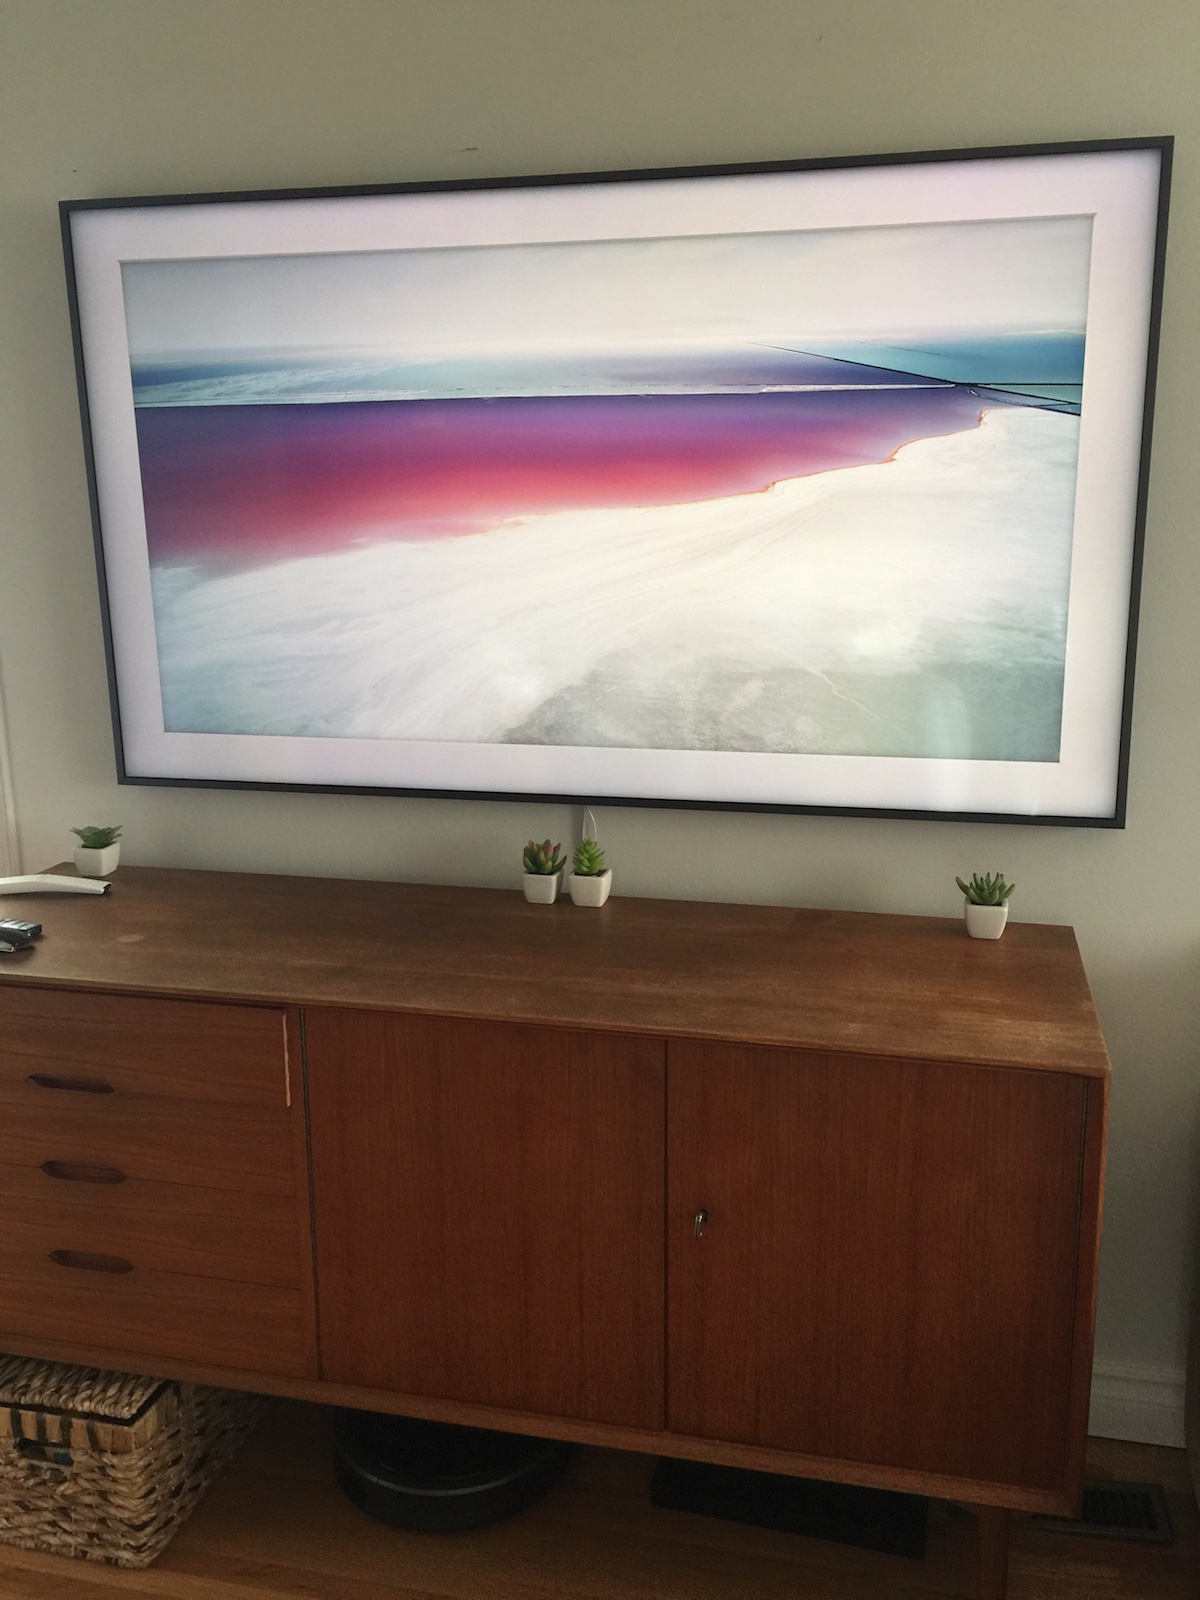 Samsung Frame TV review | Best Buy Blog